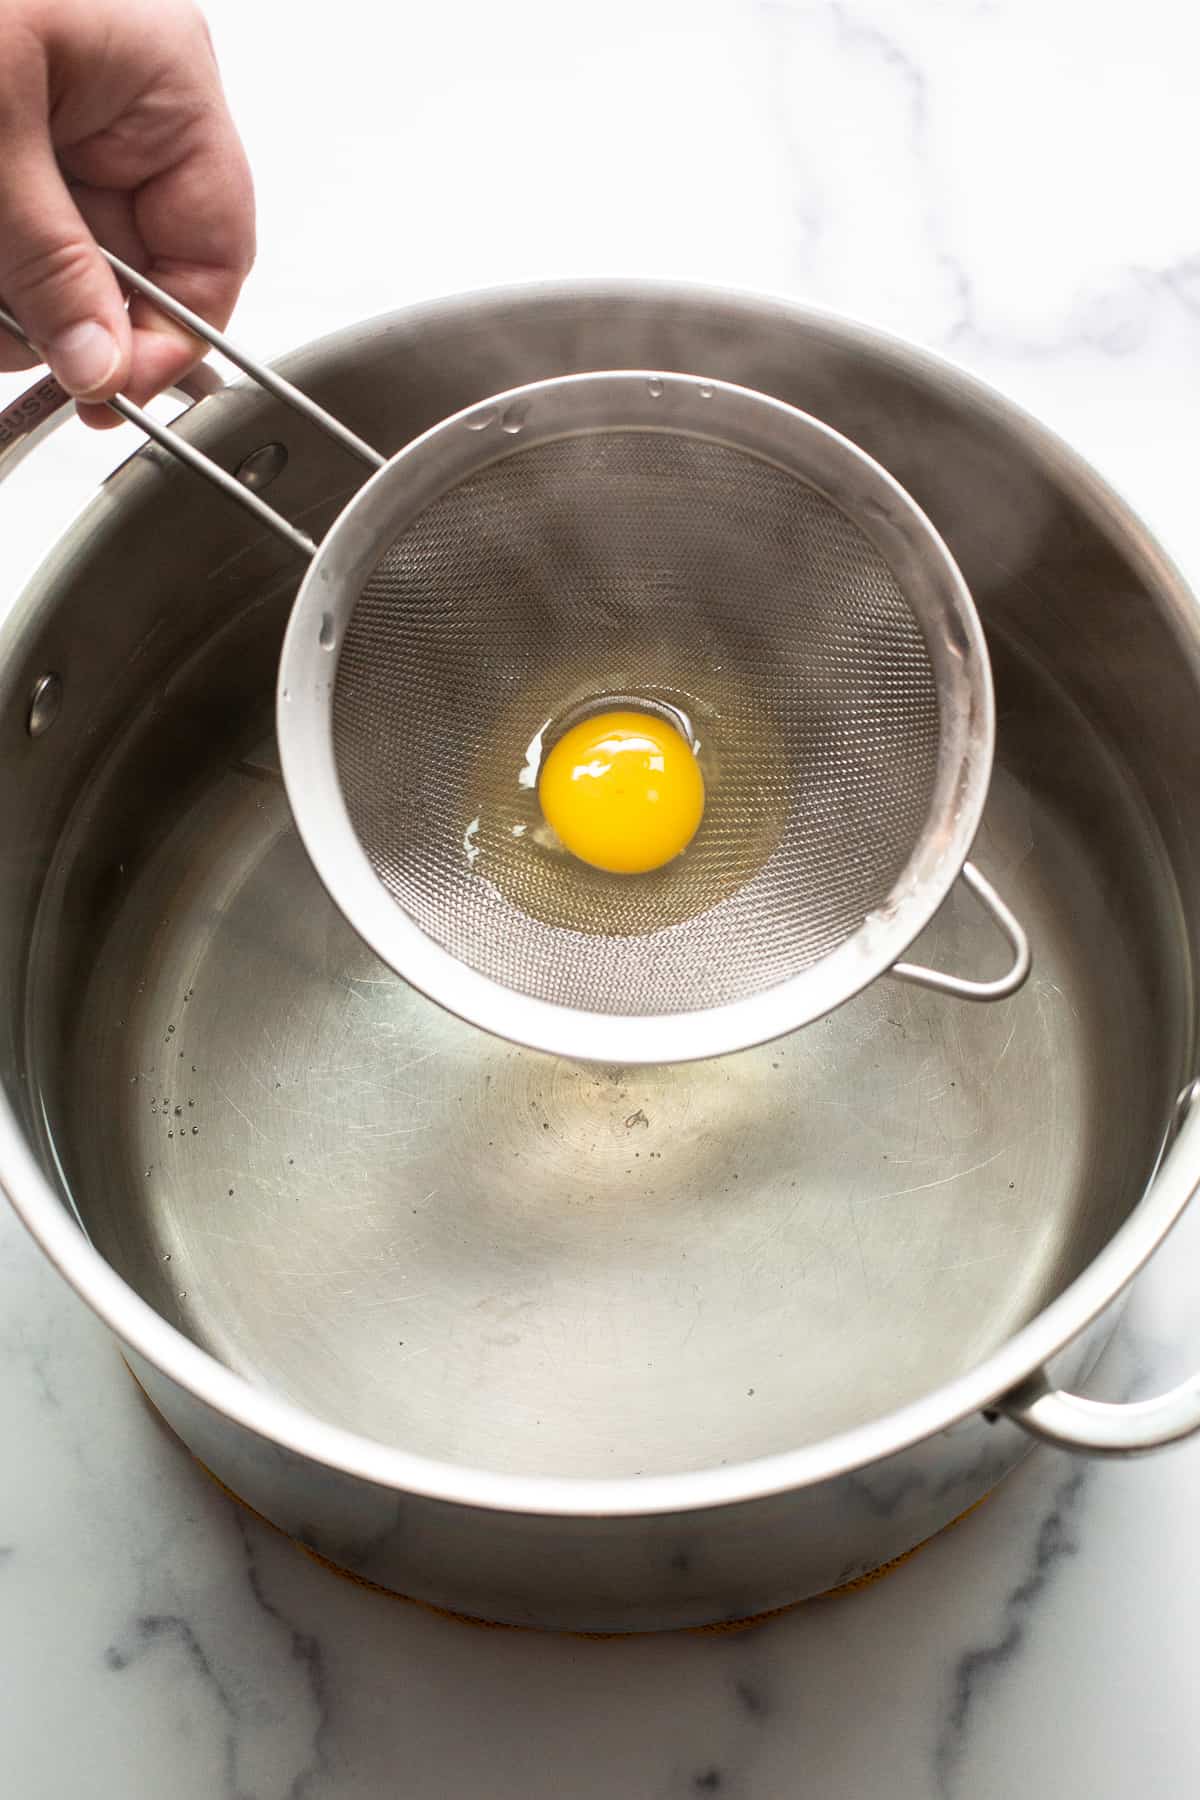 تخم مرغ خام در یک صافی در یک قابلمه آب جوش قرار می گیرد.